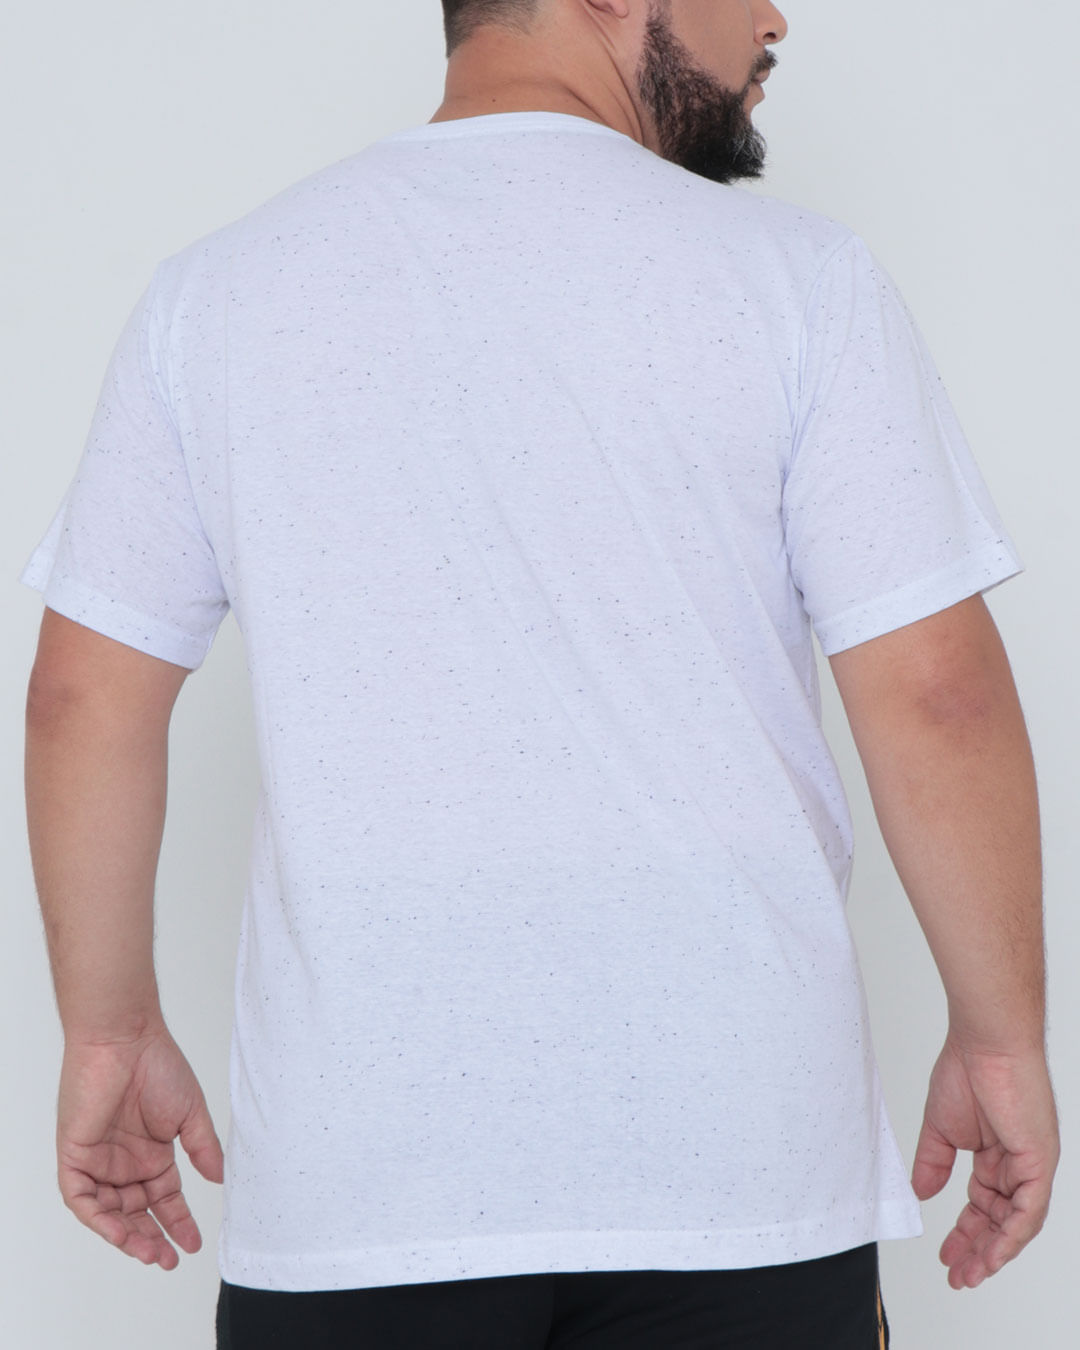 Camiseta-02-Barber-Shop-Plus---Branco